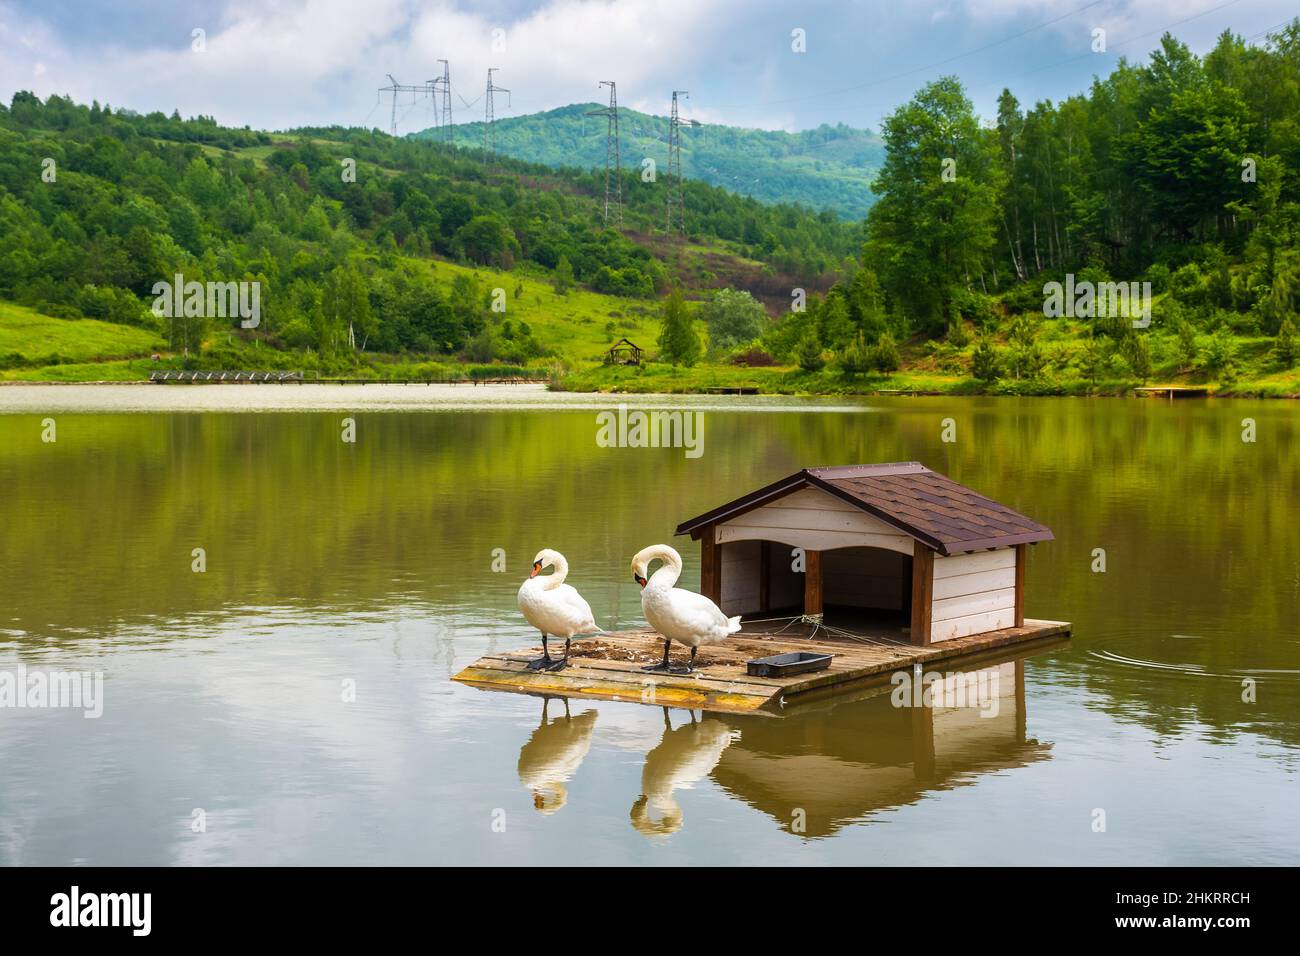 Landschaft mit Schwanen auf dem Bergsee. Landschaftliche Reflexion im Wasser. Idyllischer Naturhintergrund im Sommer. Schöne weiße Vögel in friedlicher Umgebung Stockfoto